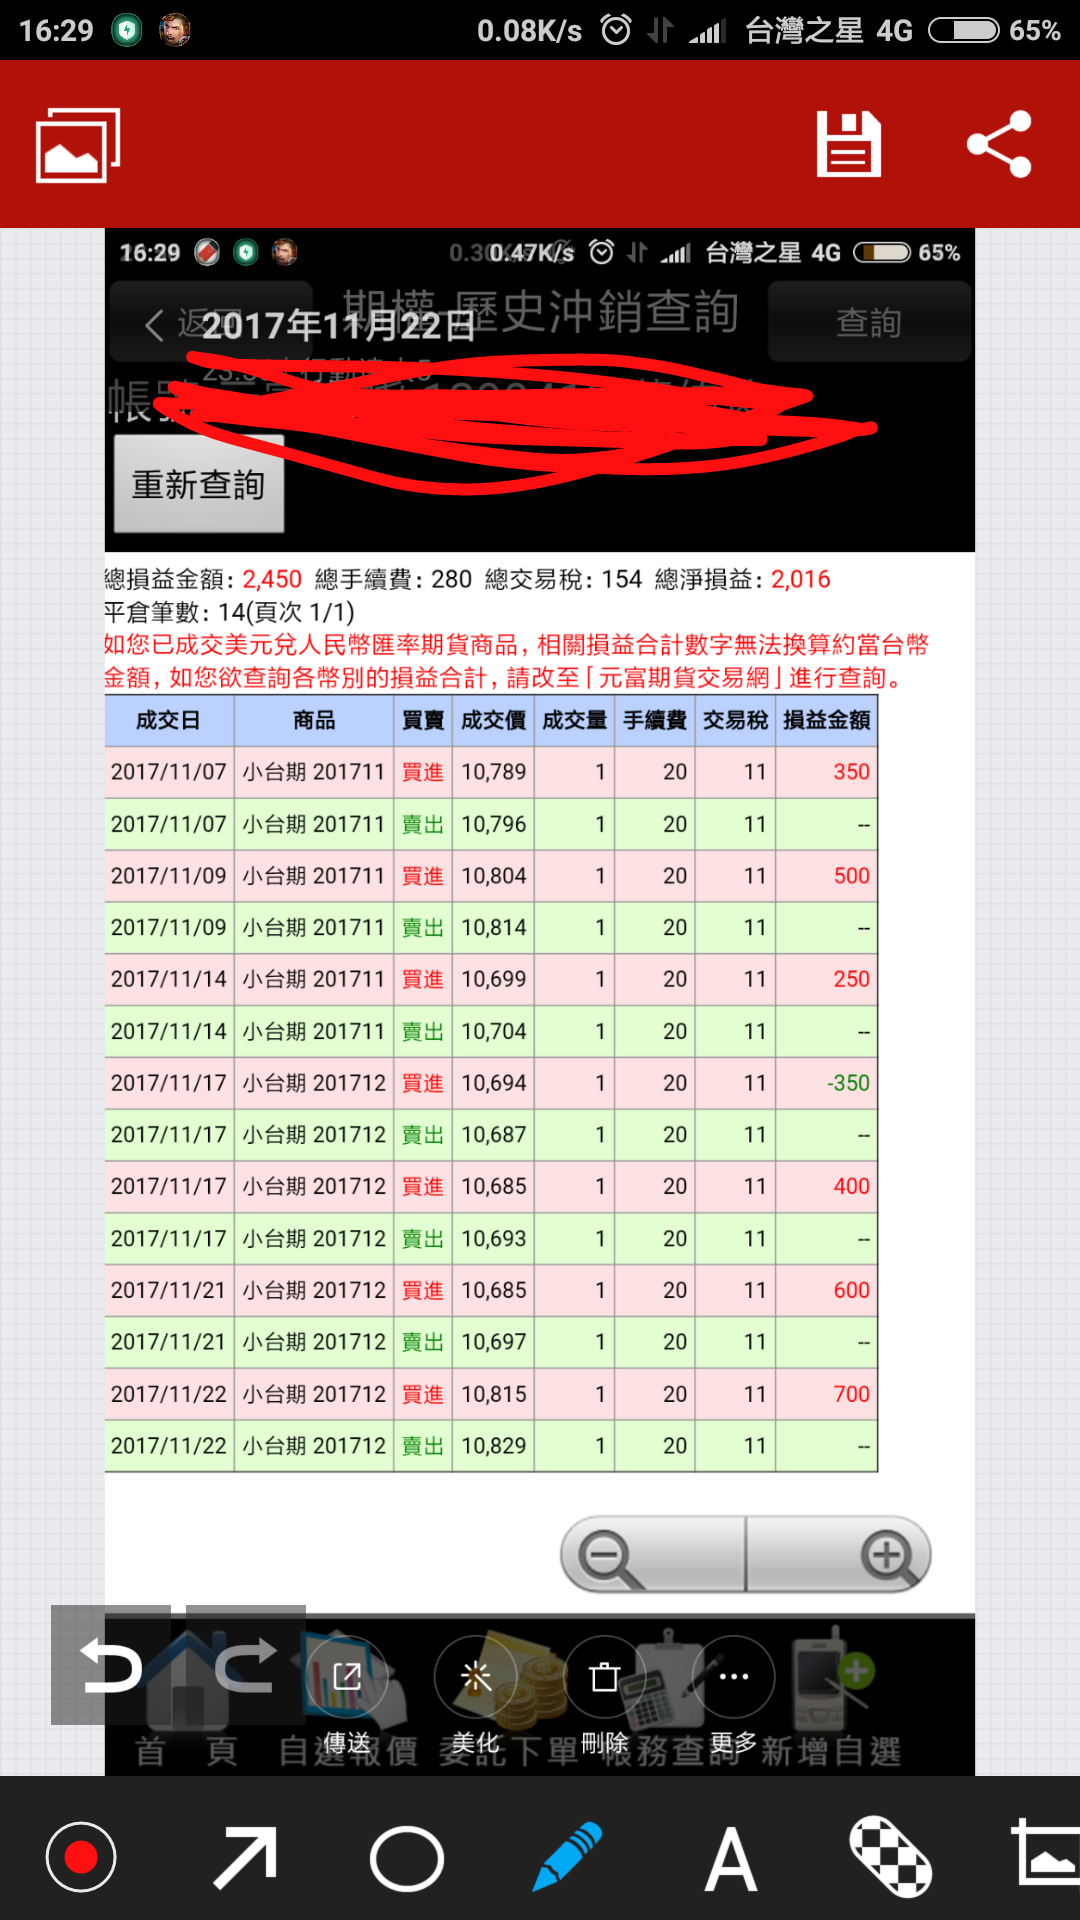 Screenshot_2017-11-26-16-29-45-541_com.tencent.qpaint.png